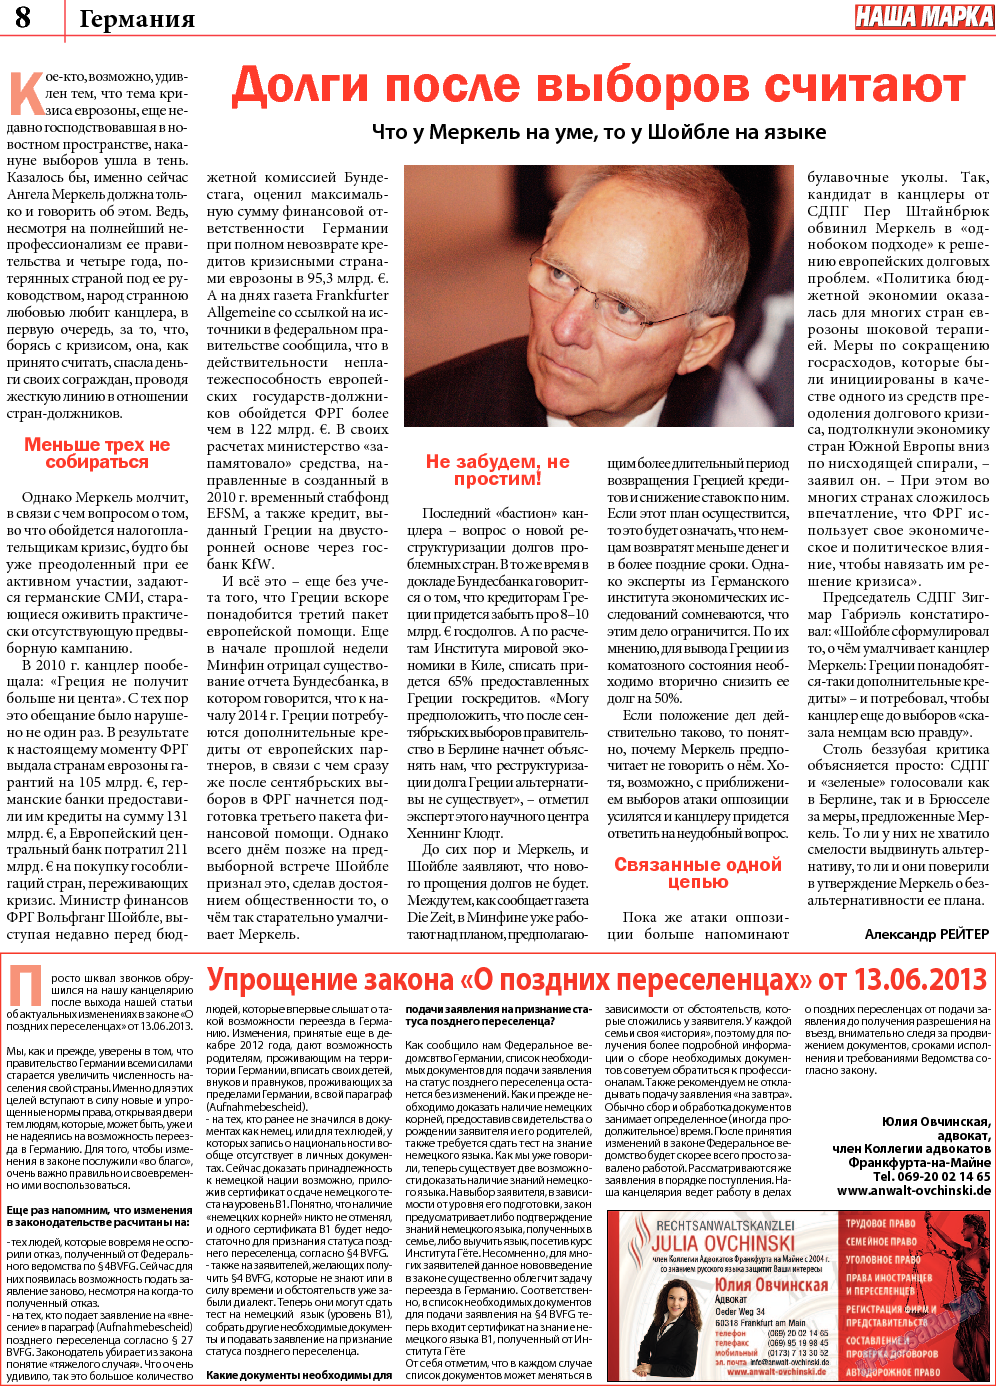 Наша марка (газета). 2013 год, номер 9, стр. 8